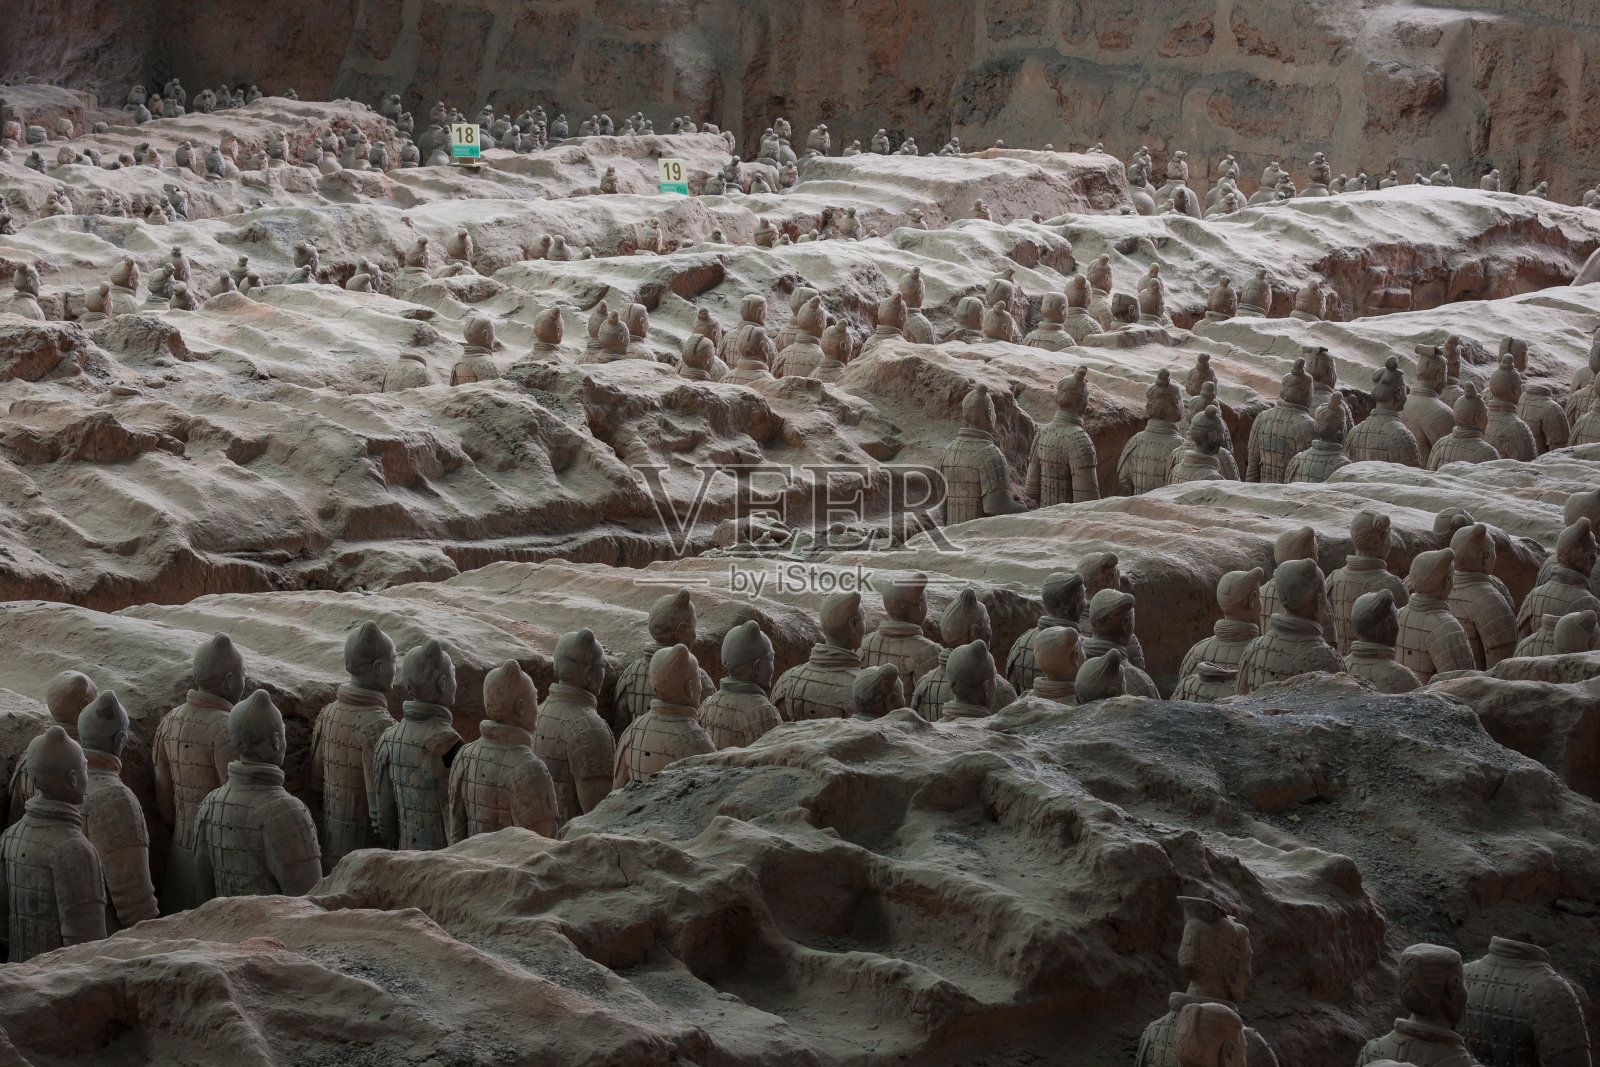 中国陕西省西安市的秦始皇兵马俑照片摄影图片